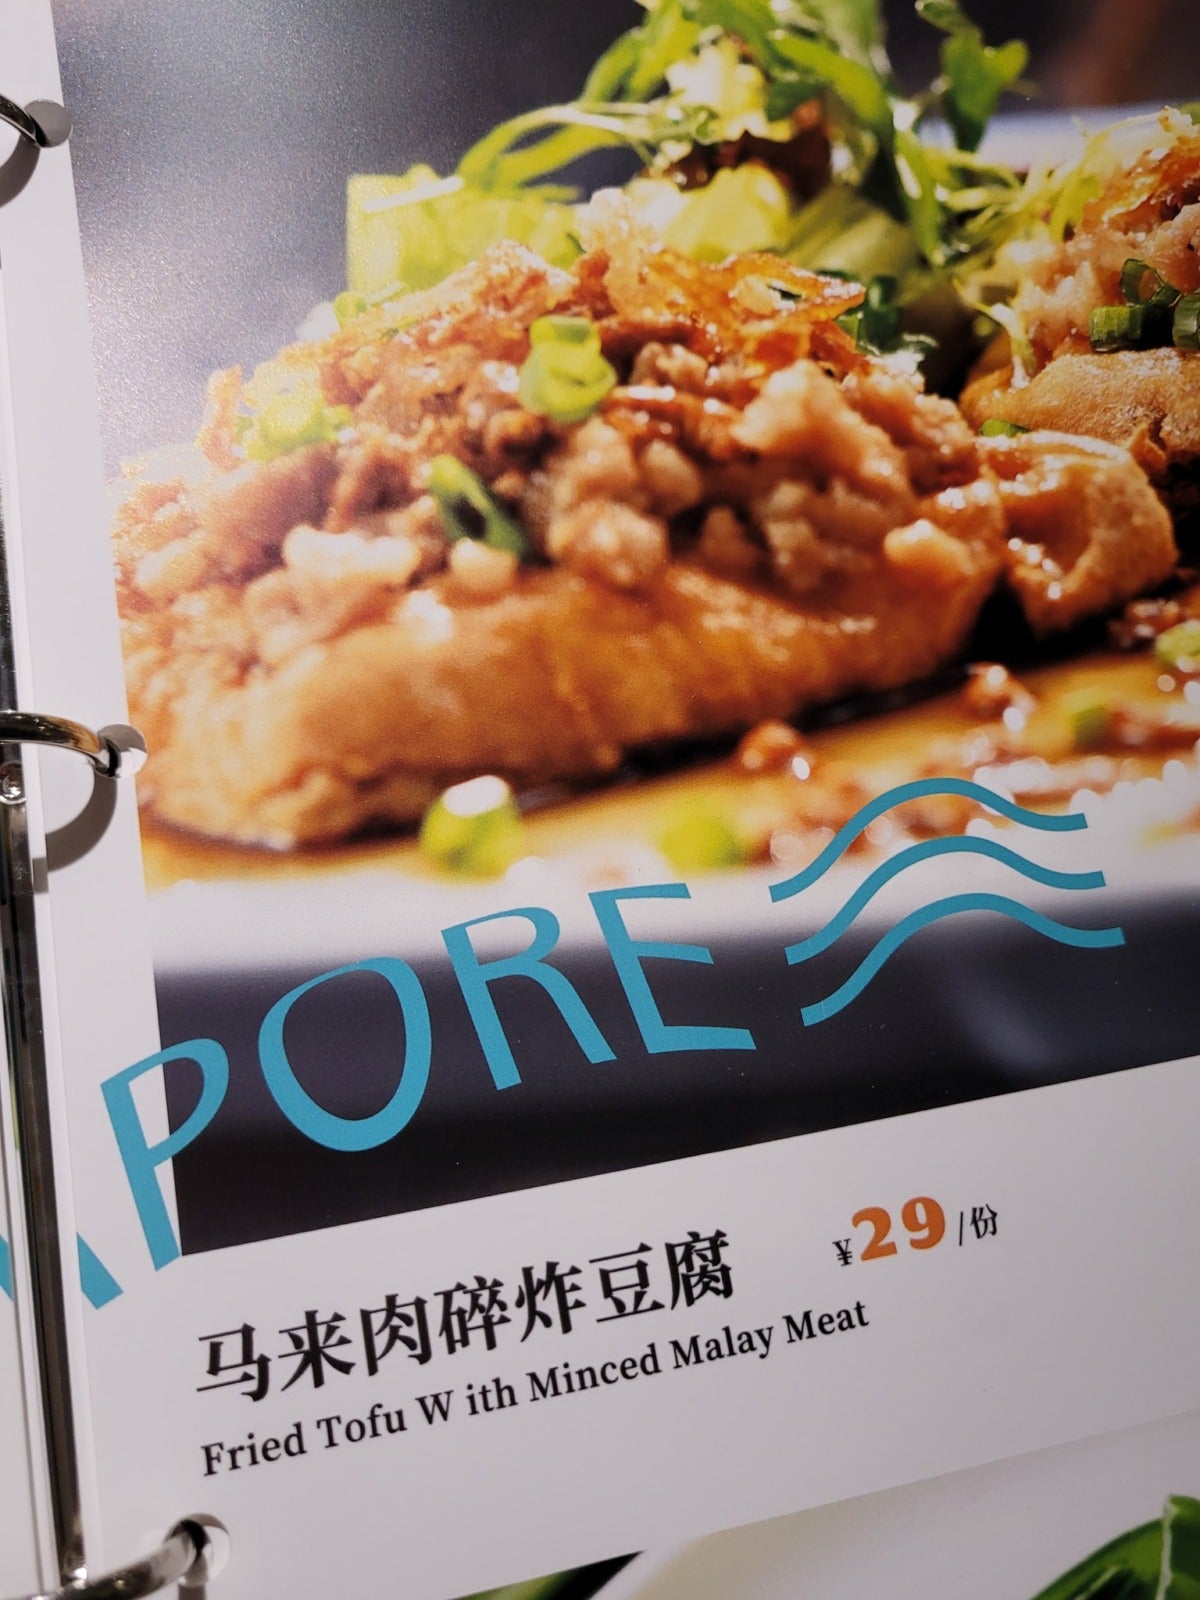 Restaurant In China Typo Translation 6